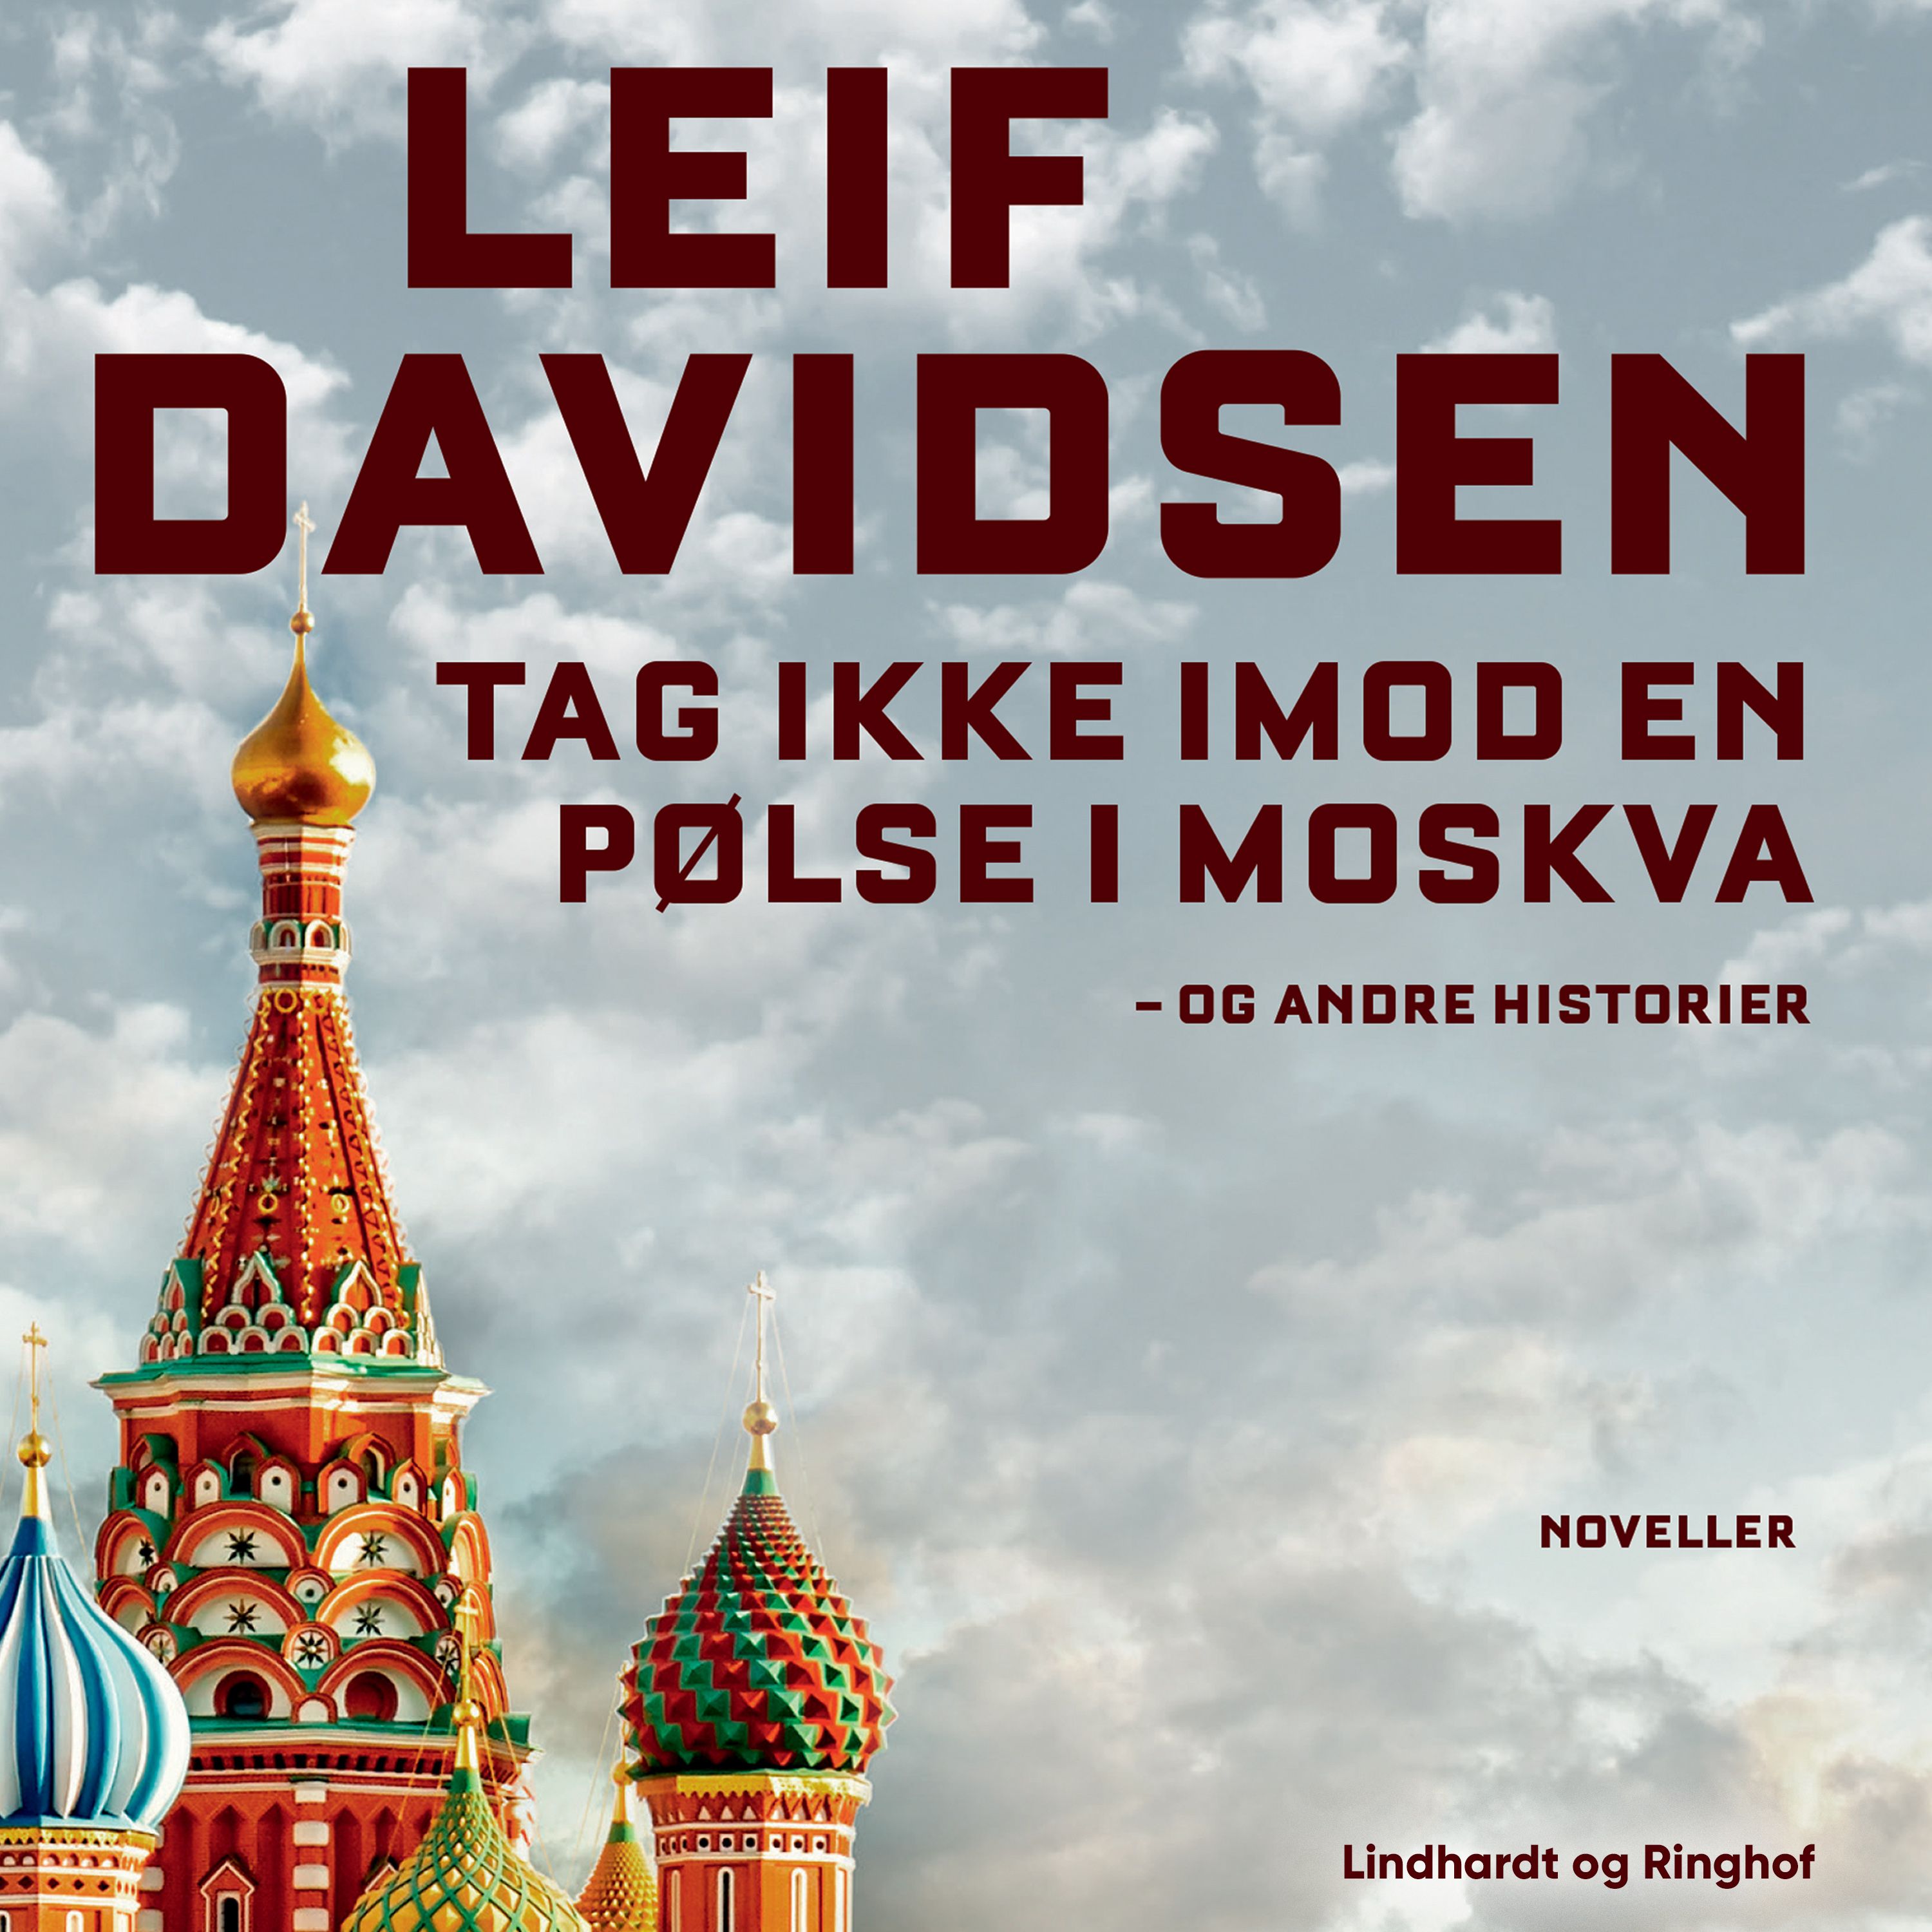 Tag ikke imod en pølse i Moskva - og andre historier, lydbog af Leif Davidsen